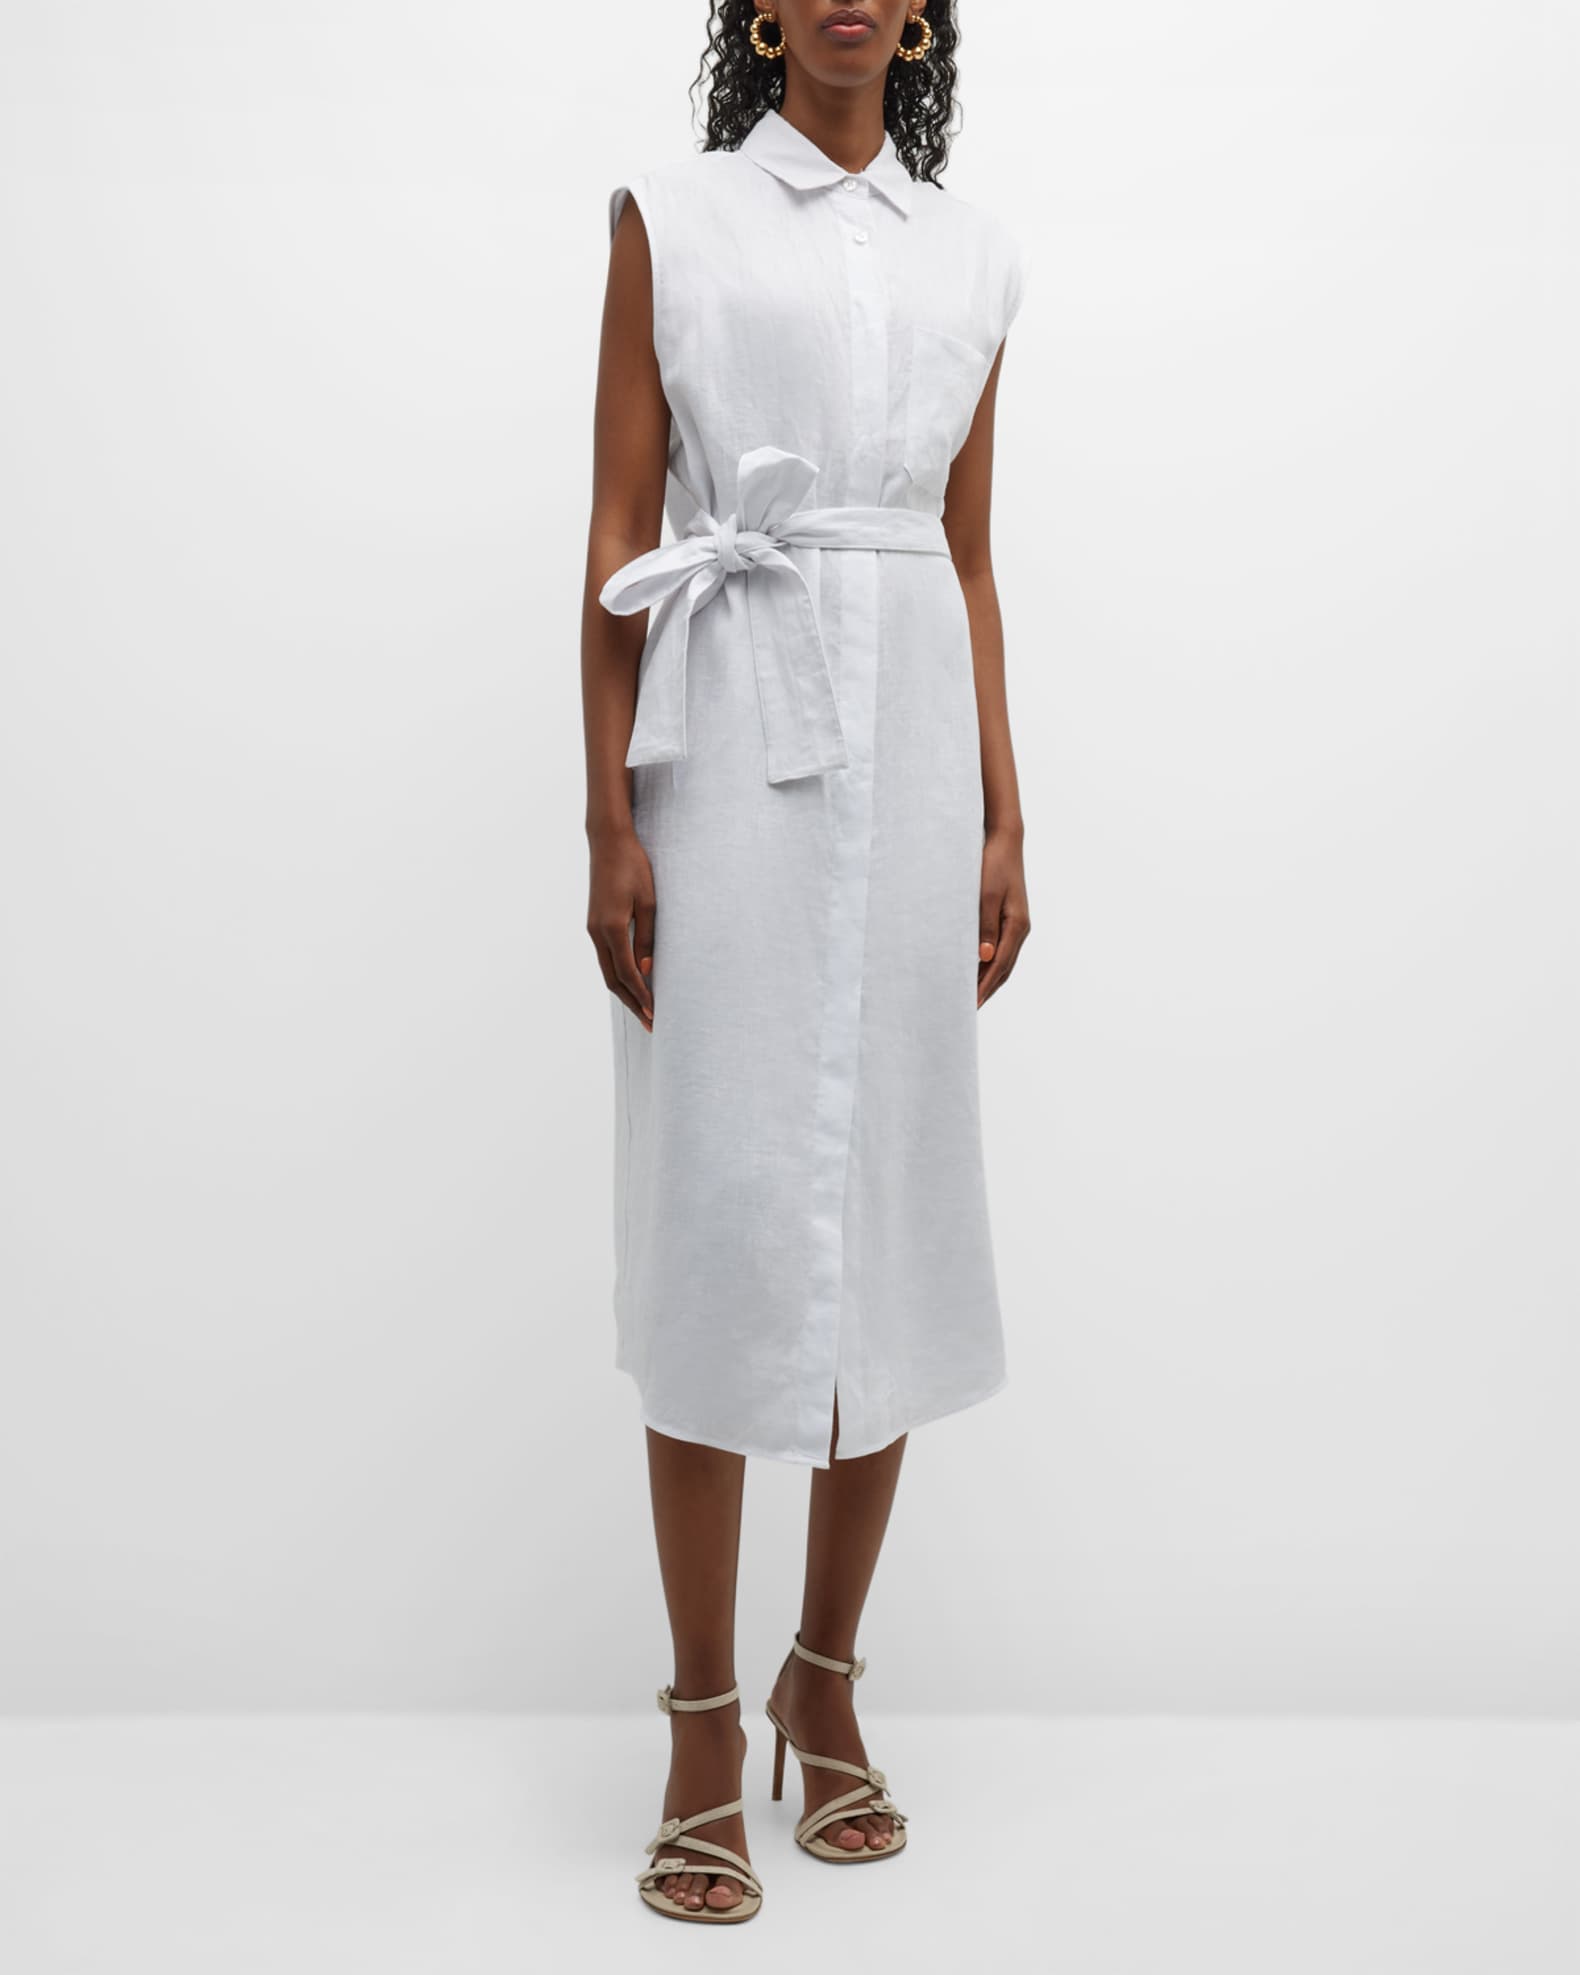 Louis Vuitton Beige Floral Painted Linen & Silk Belted Sleeveless